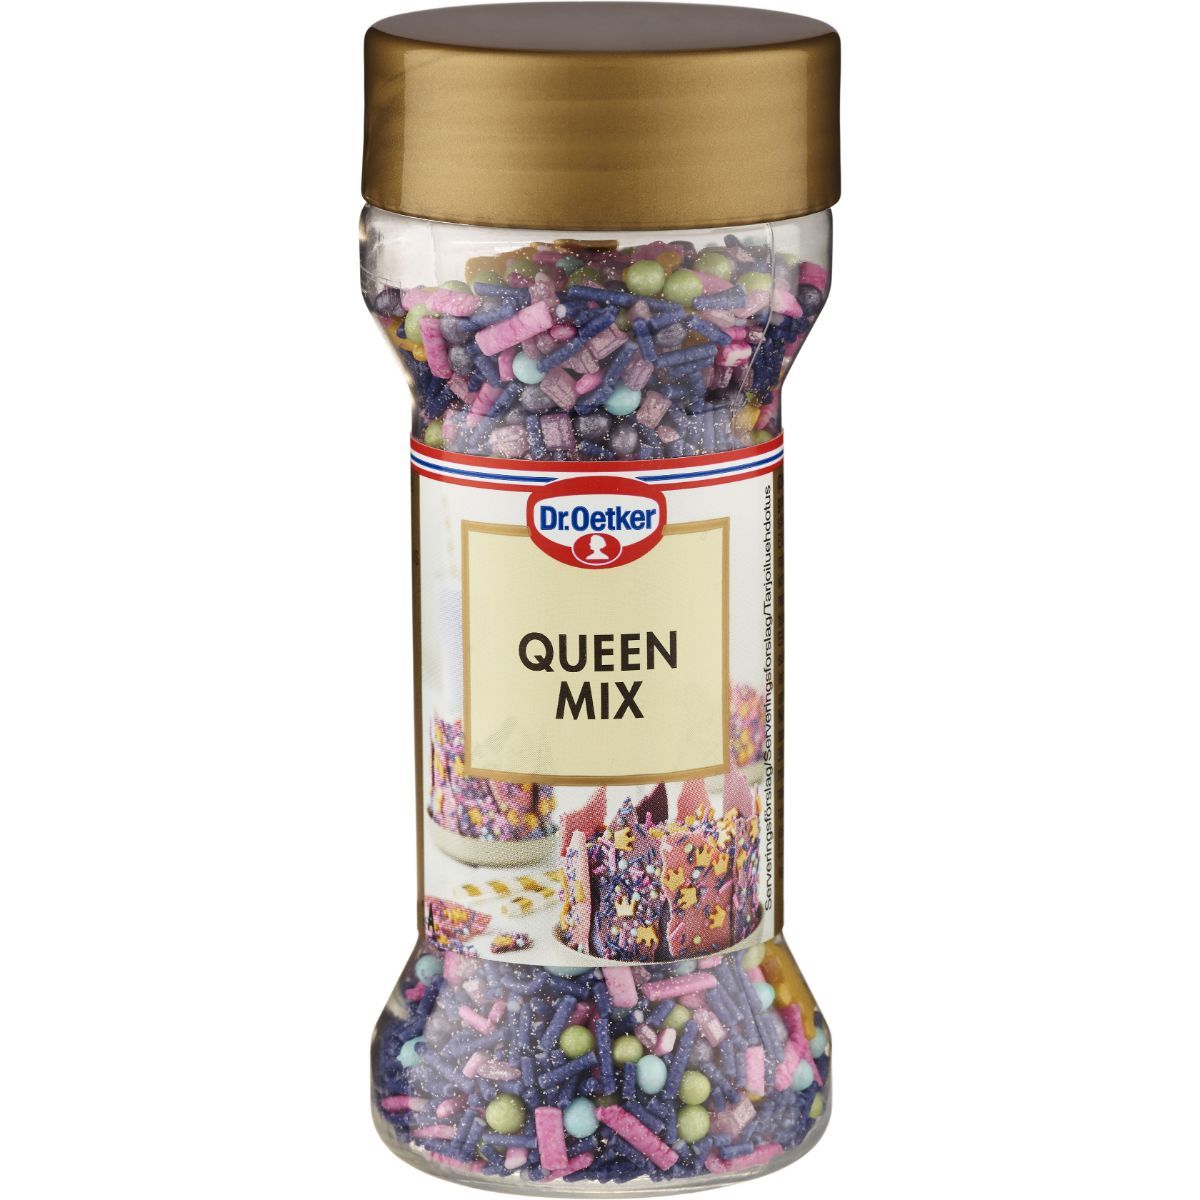 Queen mix - Ditt svenska skafferi